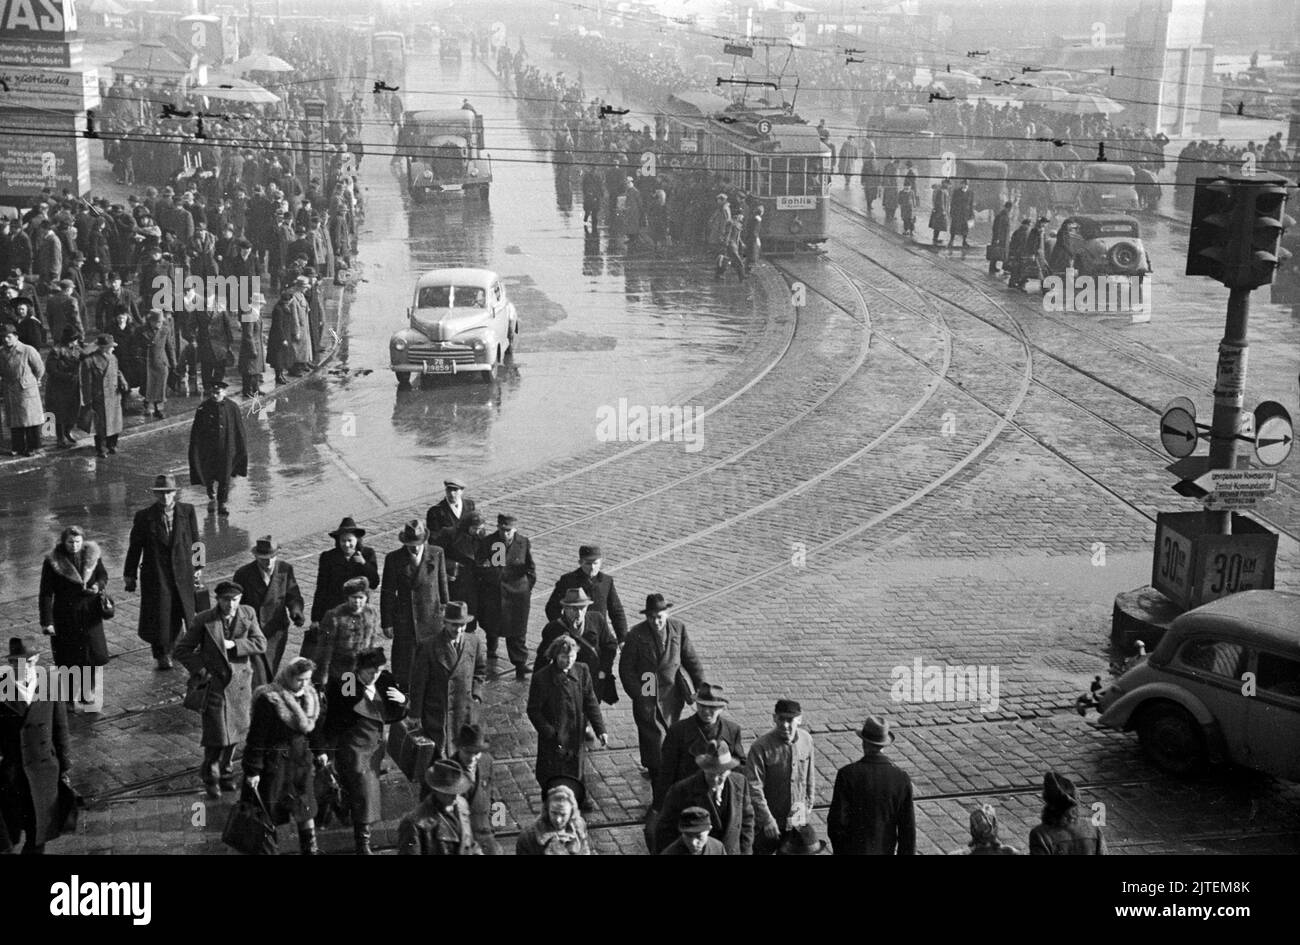 Menschenmenge auf dem Weg zur Frühjahrsmesse in Leipzig, Deutschland 1947. Stock Photo